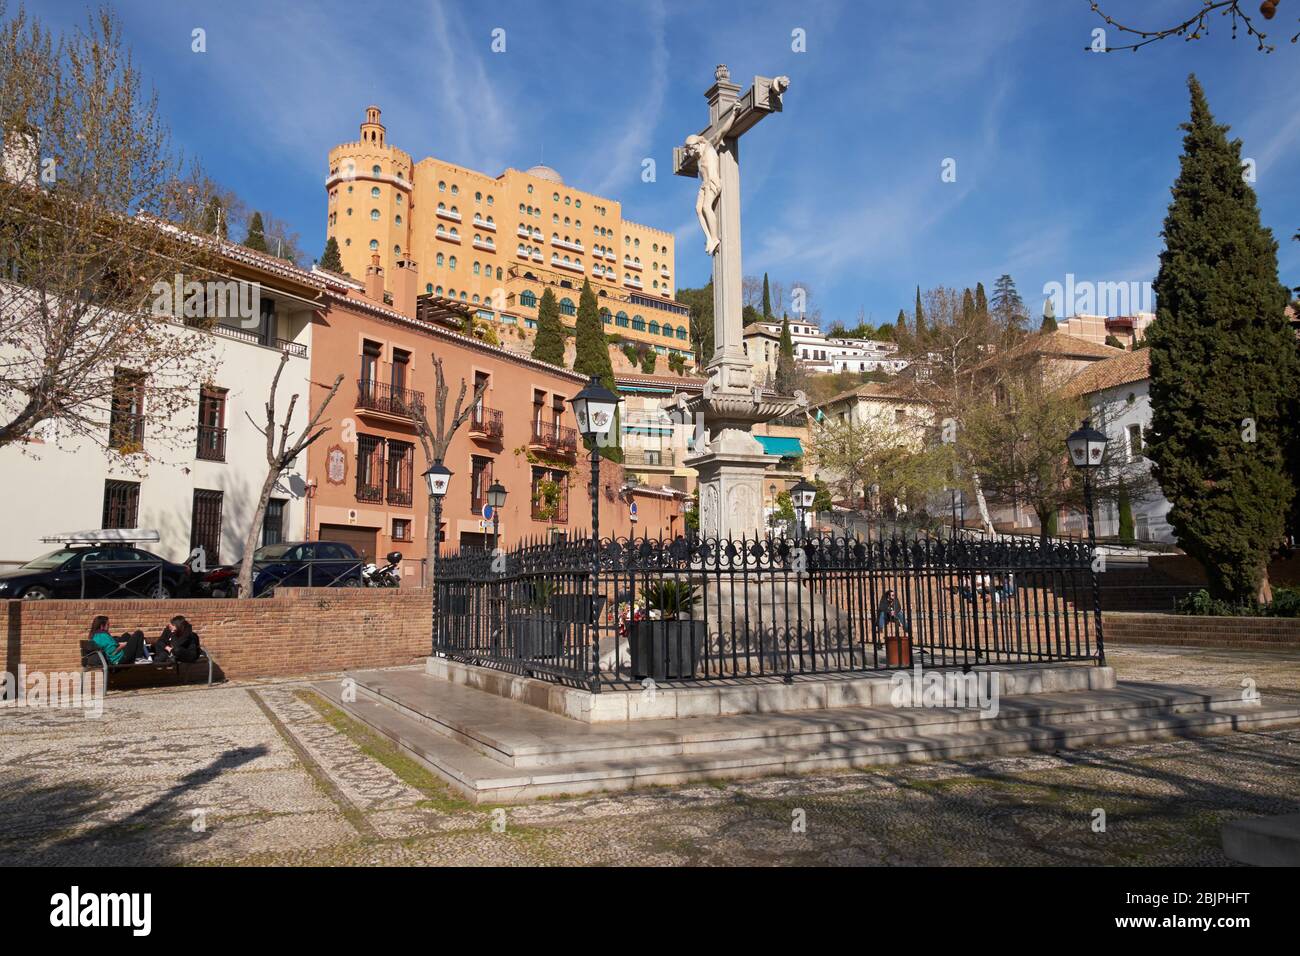 The statue 'Cristo de los Favores' at Plaza Campo del Principe, Barrio Realejo, Granada, Andalusia, Spain. Stock Photo